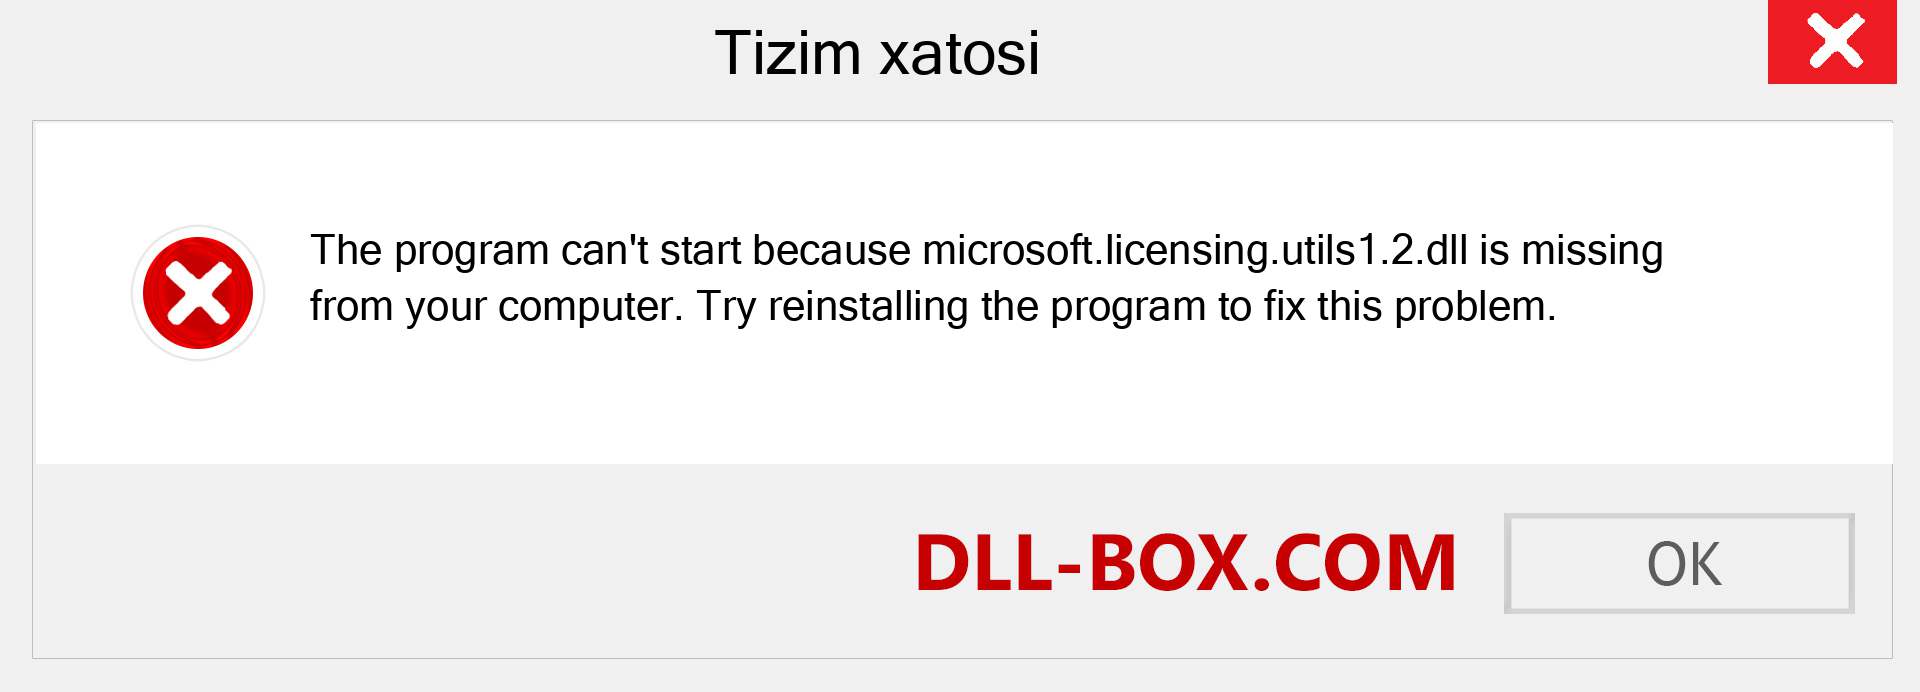 microsoft.licensing.utils1.2.dll fayli yo'qolganmi?. Windows 7, 8, 10 uchun yuklab olish - Windowsda microsoft.licensing.utils1.2 dll etishmayotgan xatoni tuzating, rasmlar, rasmlar